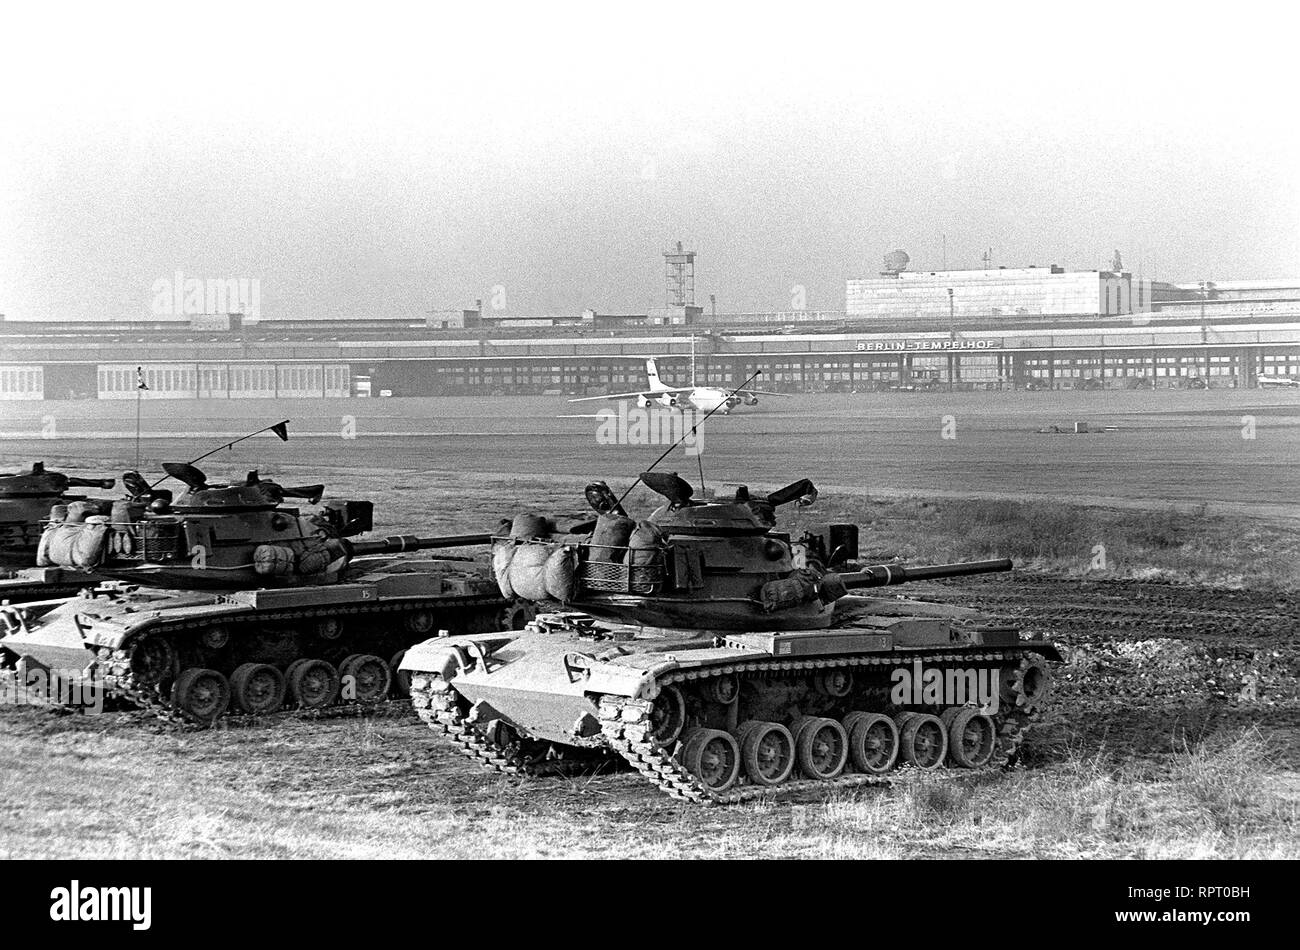 M-60 principale battaglia serbatoi di Co. F, quarantesimo Armor, Berlino Bde., subisce una combustione a secco le competenze della formazione a Tempelhof aeroporto centrale. Foto Stock